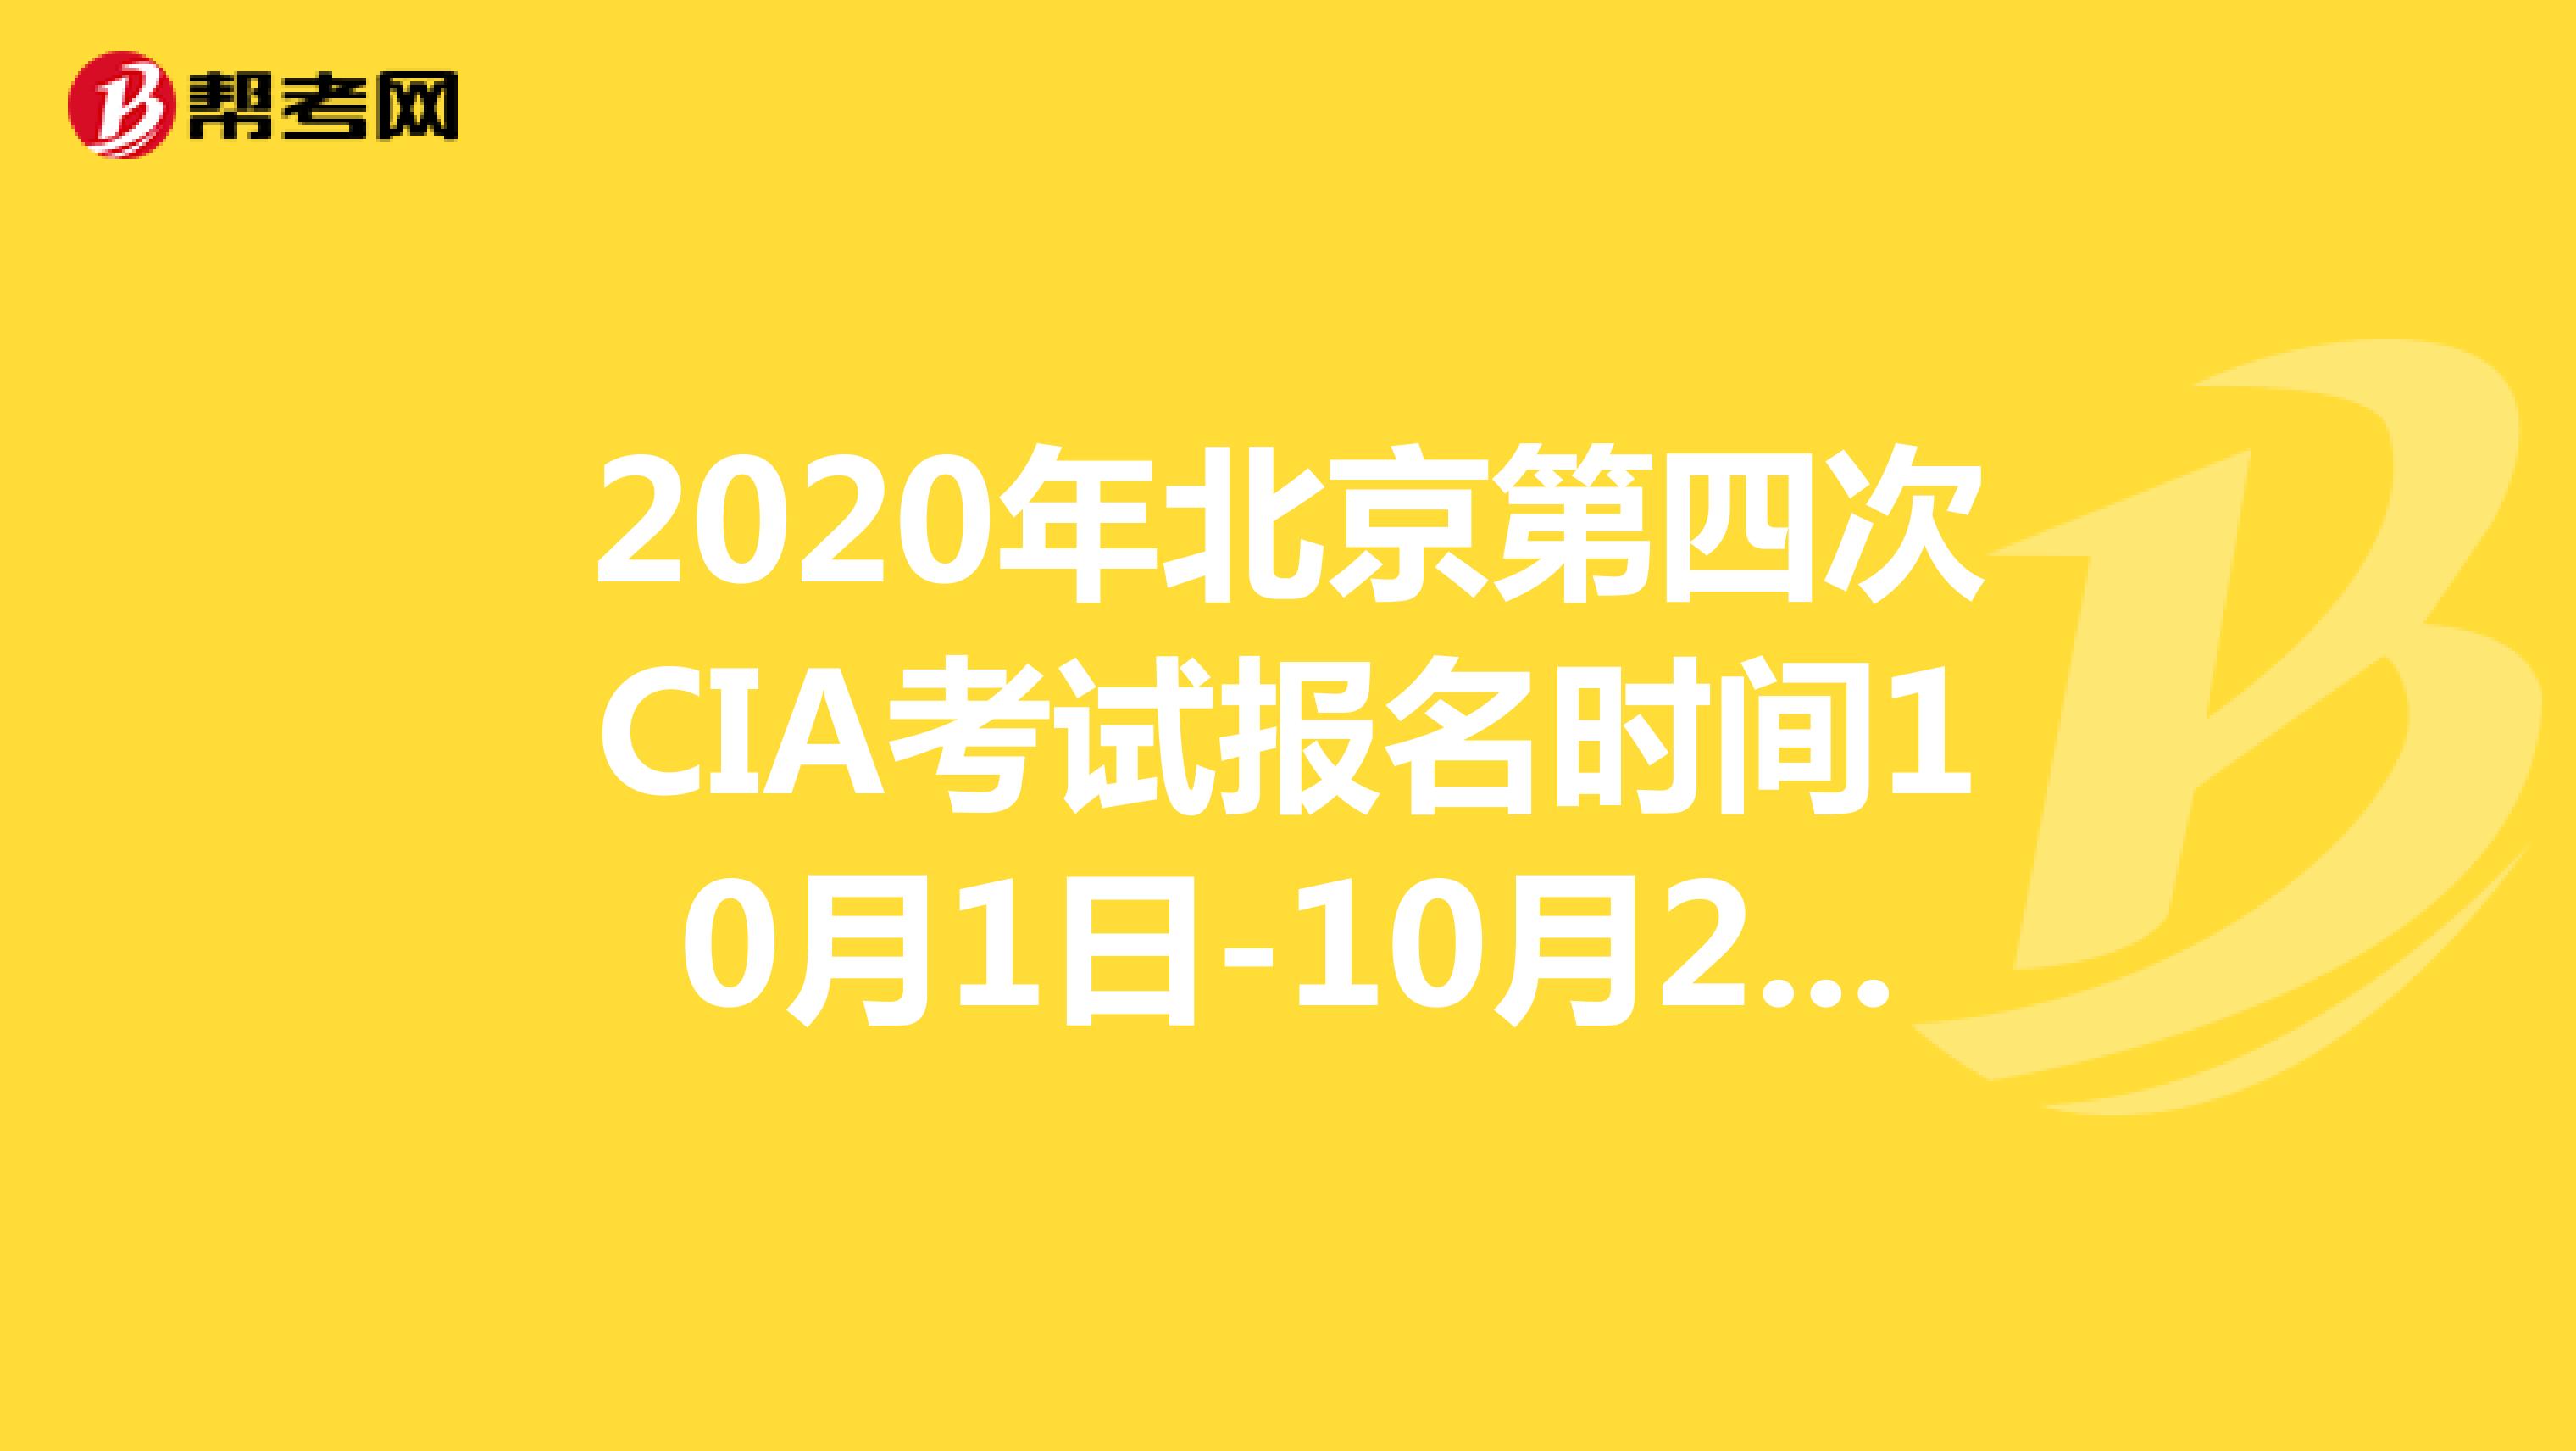 2020年北京第四次CIA考试报名时间10月1日-10月20日